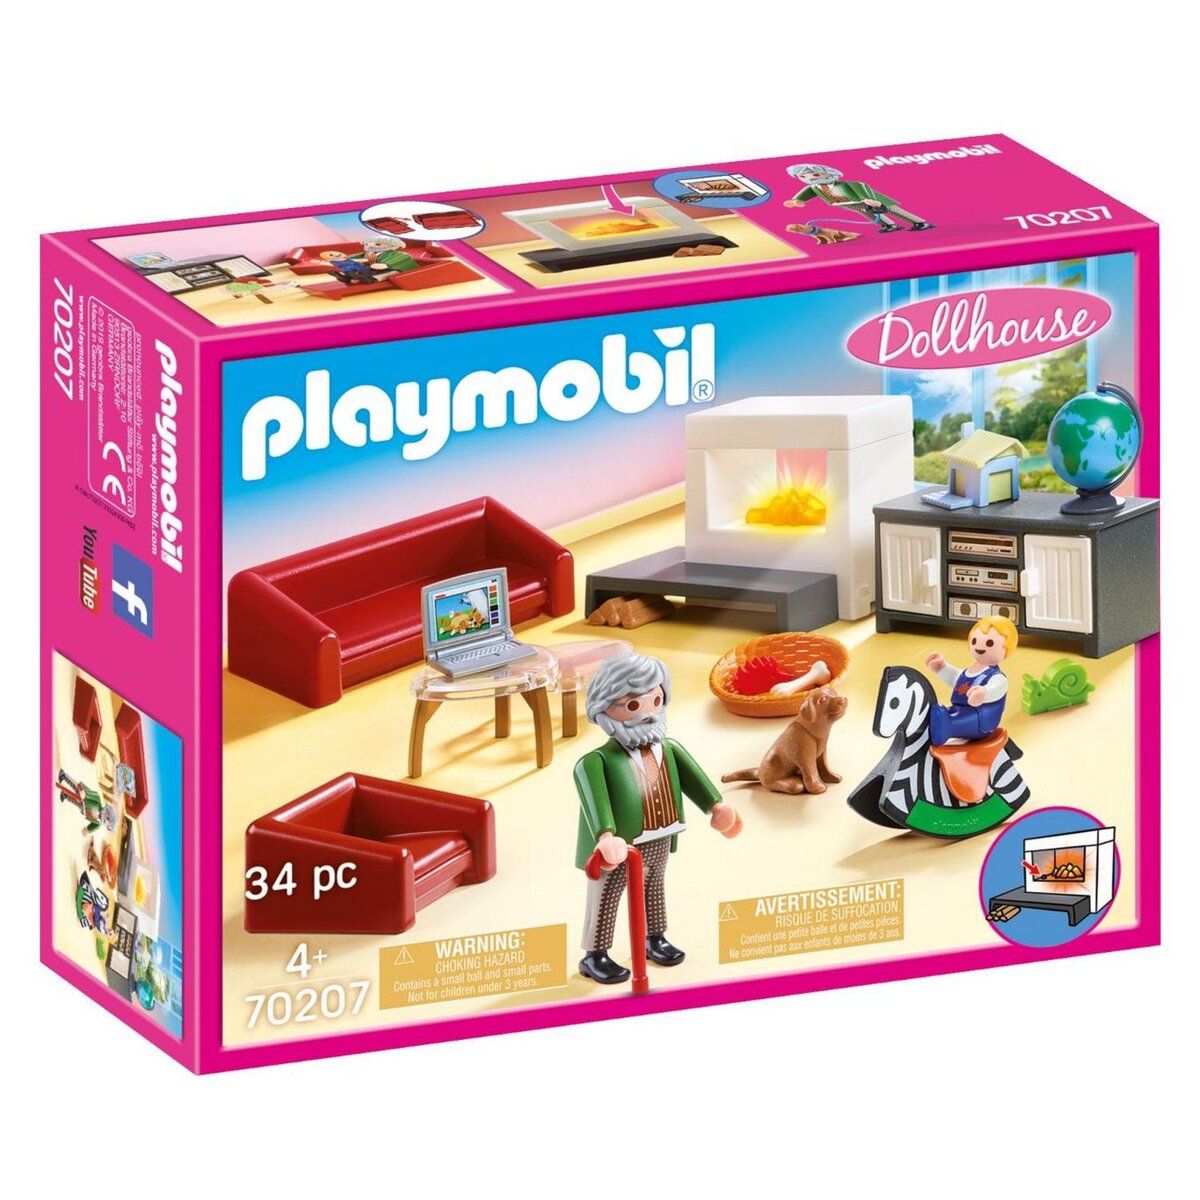 Playmobil PLAYMOBIL City Life 70989 Salon aménagé